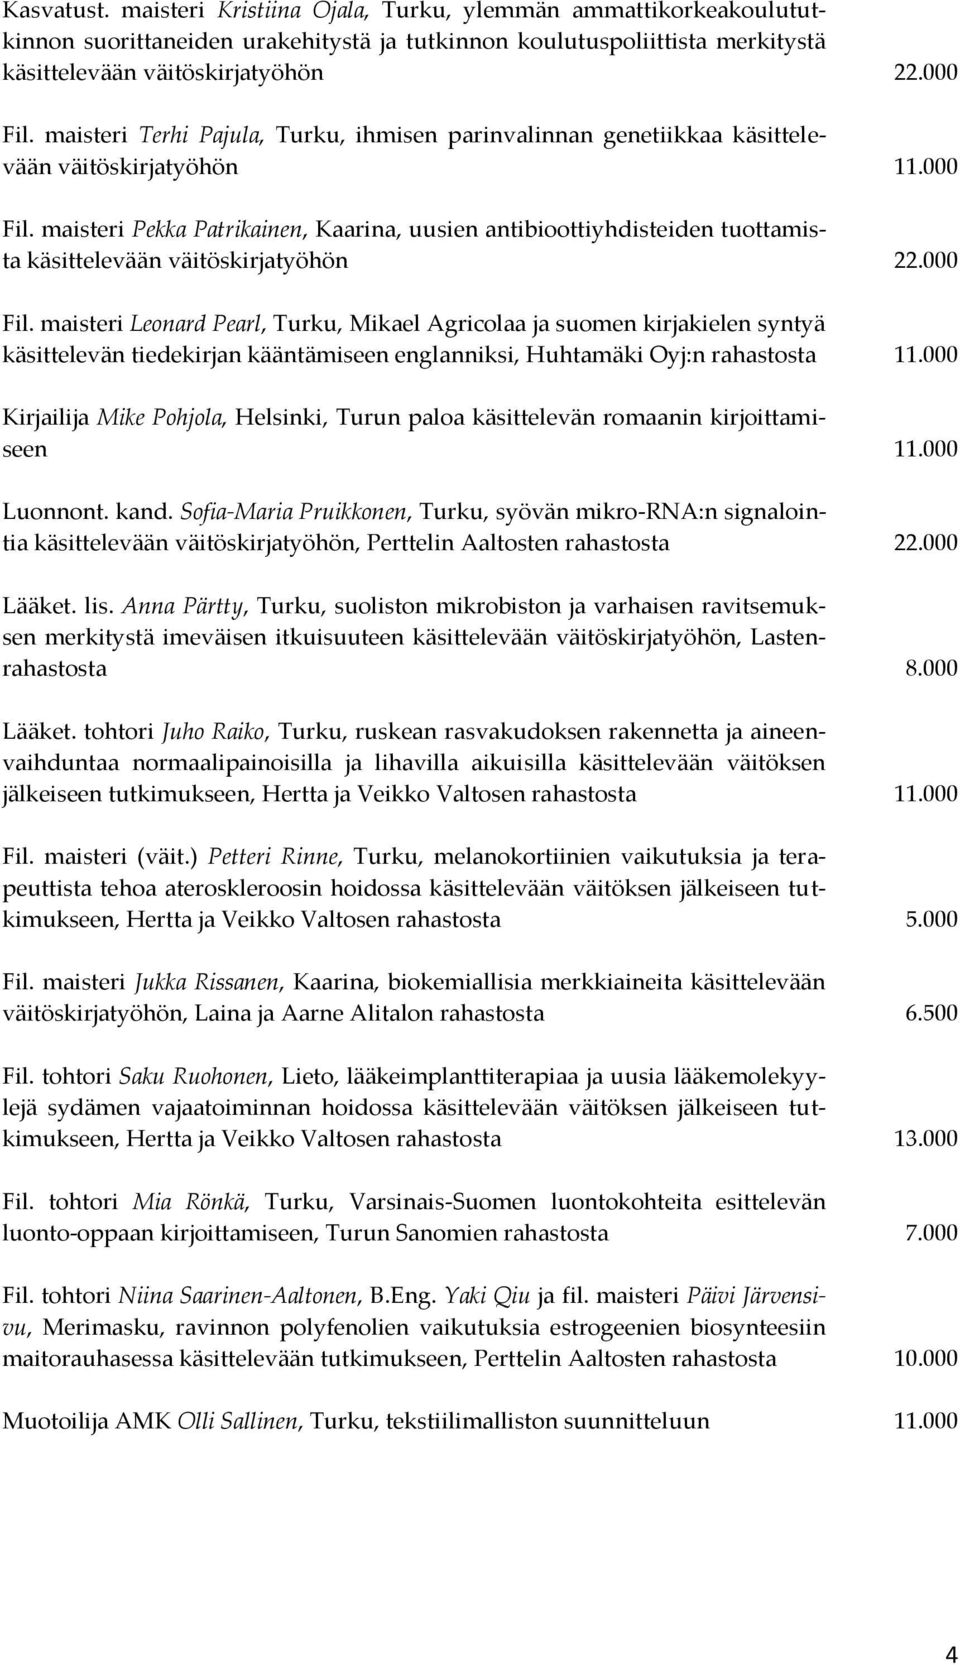 maisteri Pekka Patrikainen, Kaarina, uusien antibioottiyhdisteiden tuottamista käsittelevään väitöskirjatyöhön 22.000 Fil.